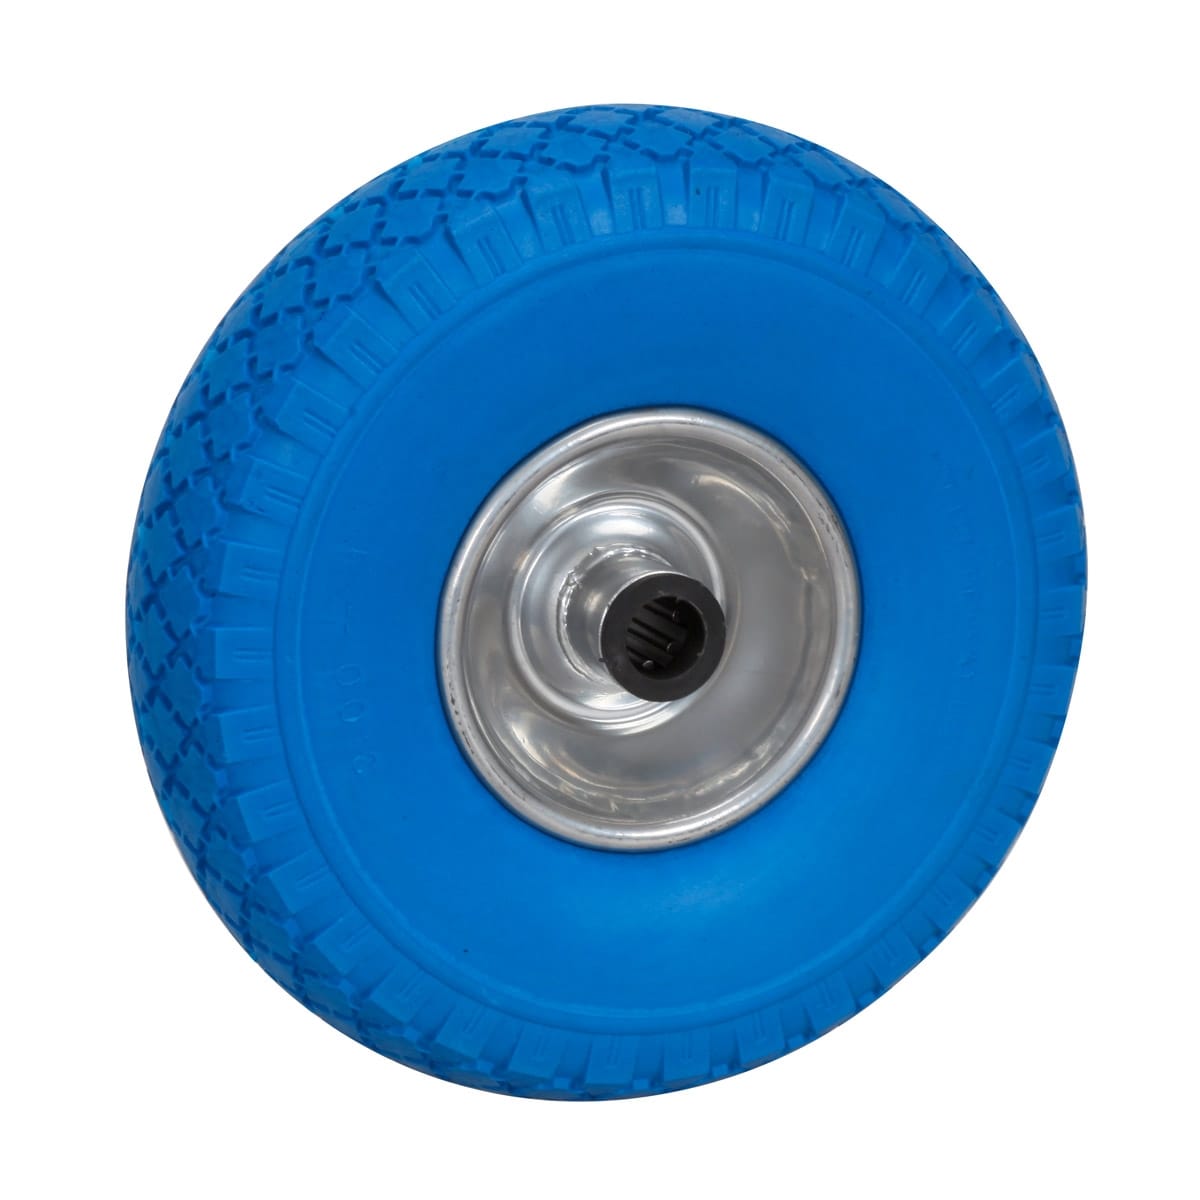 Pistonkestävä kumipyörä kartingautoon 260x85 mm, sininen